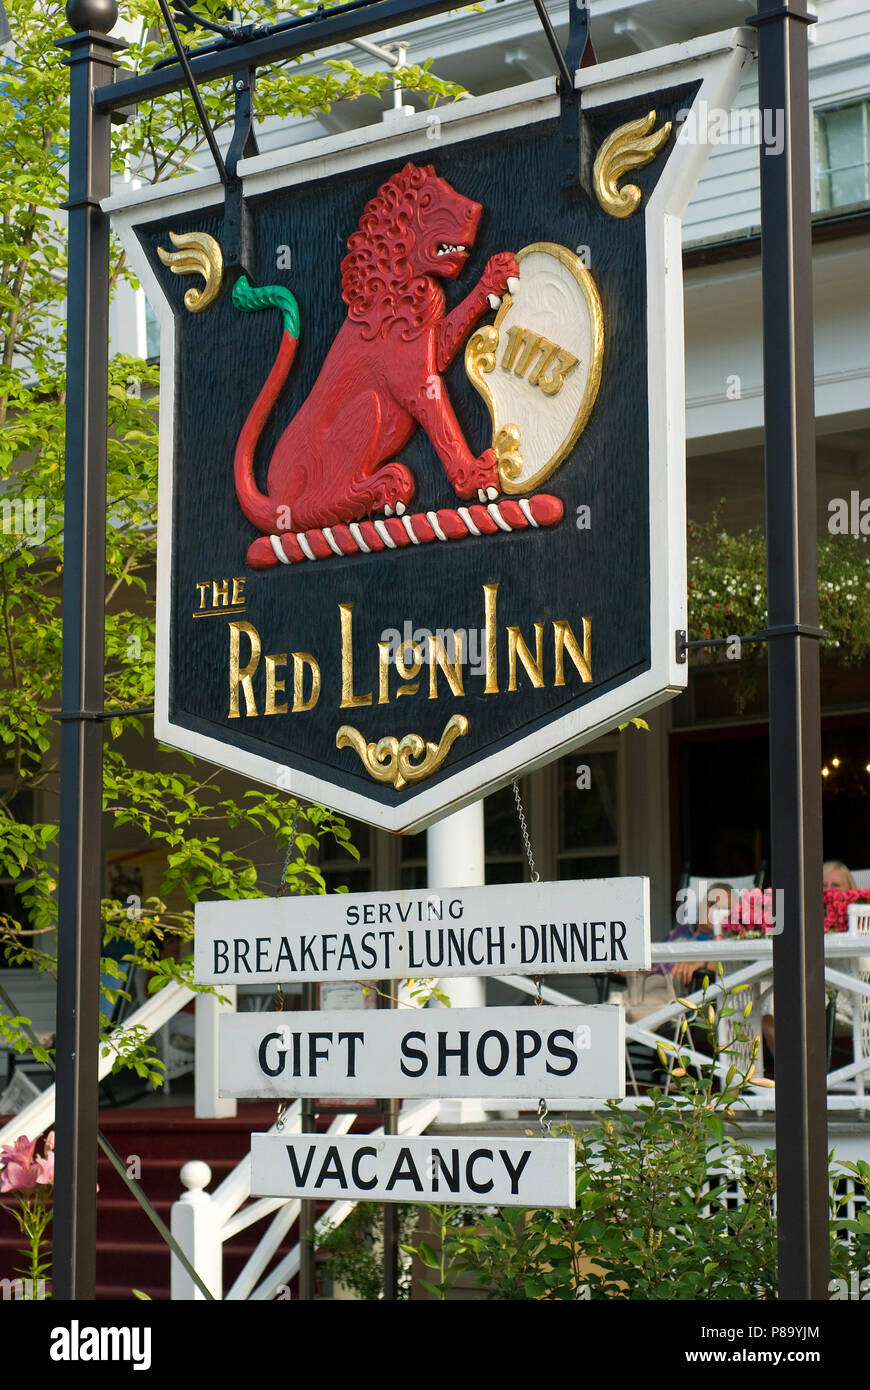 Publicité signe de Red Lion Inn, Stockbridge, comté de Berkshire, Massachusetts, USA Banque D'Images